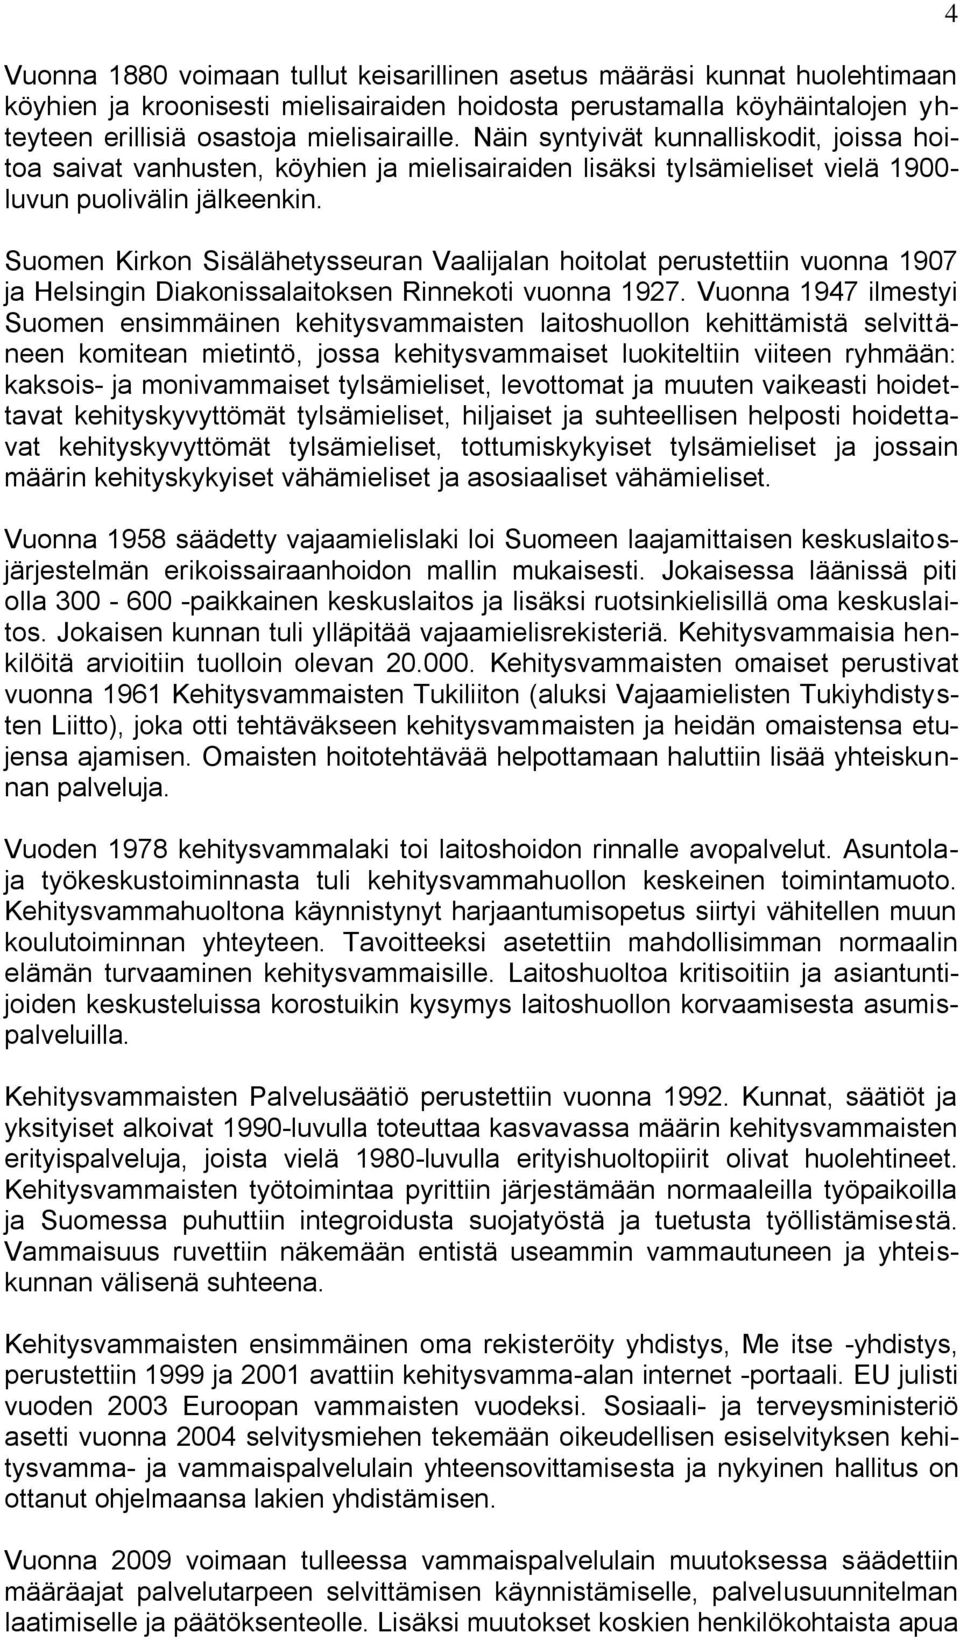 Suomen Kirkon Sisälähetysseuran Vaalijalan hoitolat perustettiin vuonna 1907 ja Helsingin Diakonissalaitoksen Rinnekoti vuonna 1927.